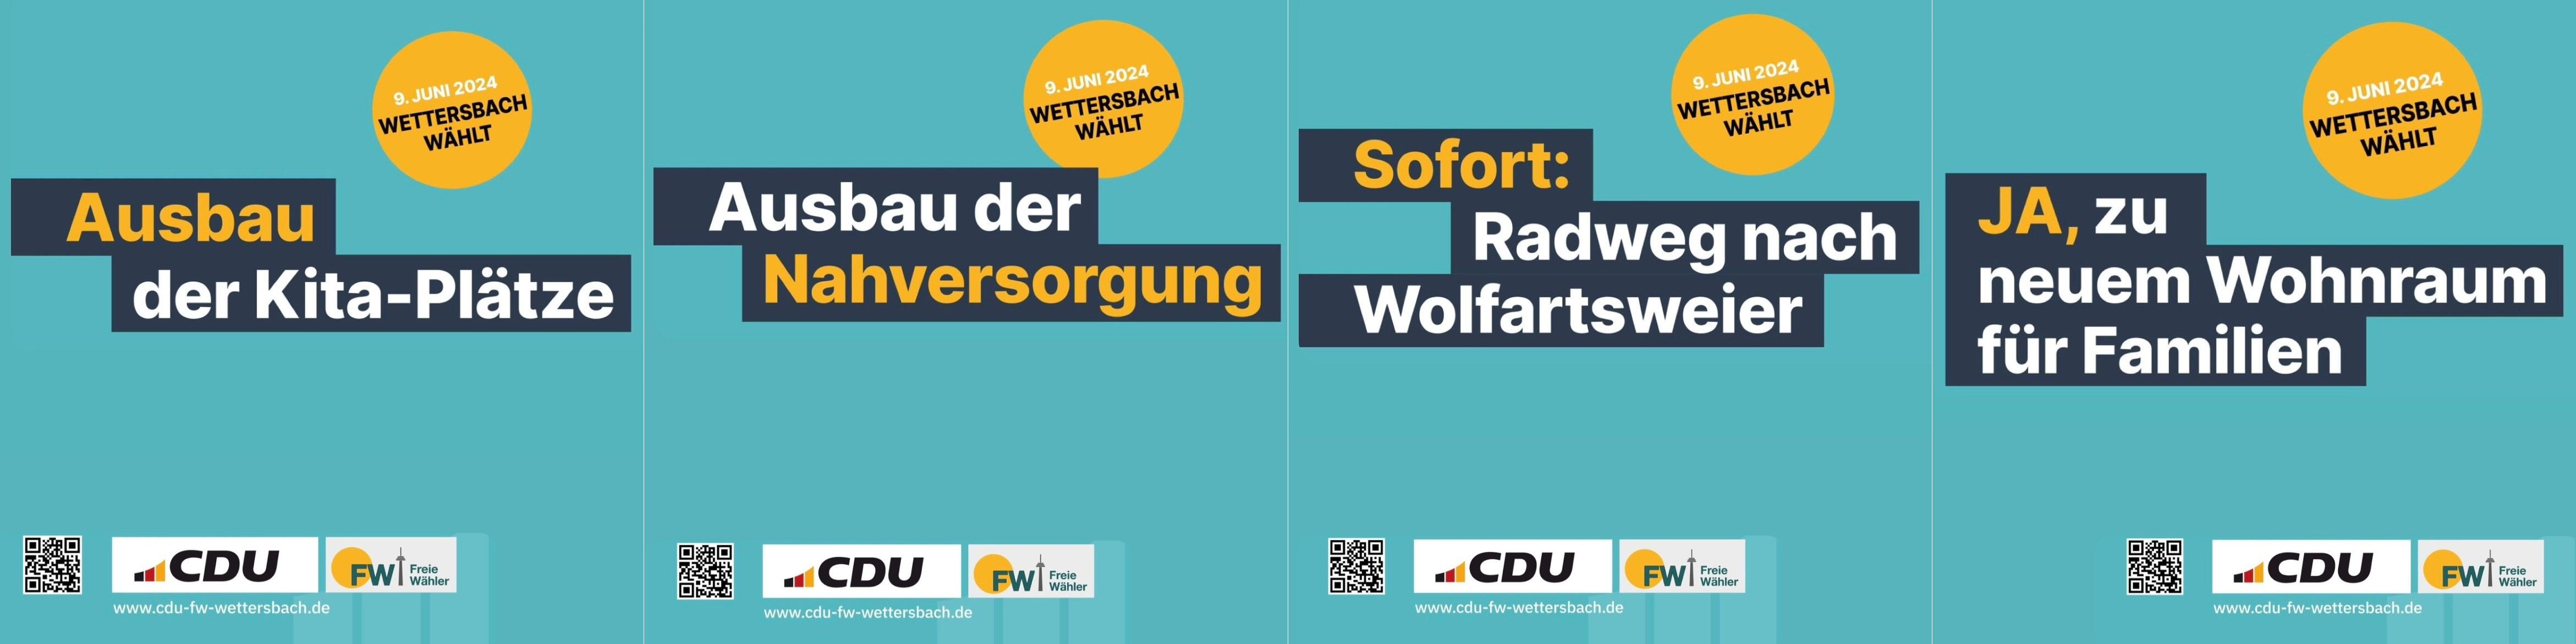 CDU-FW Wettersbach: Unser Wahlprogramm